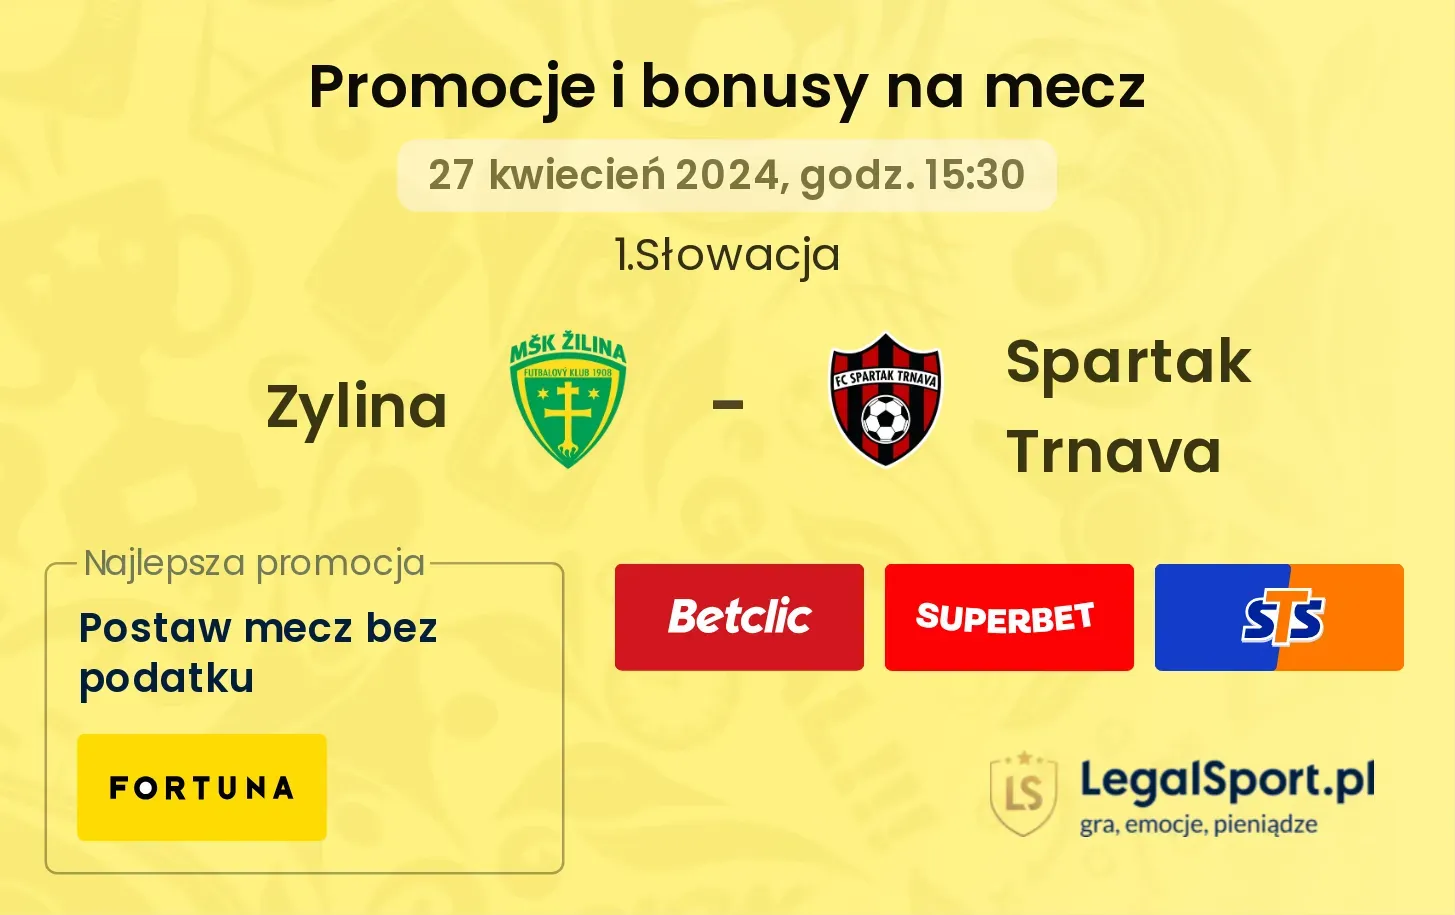 Zylina - Spartak Trnava promocje bonusy na mecz